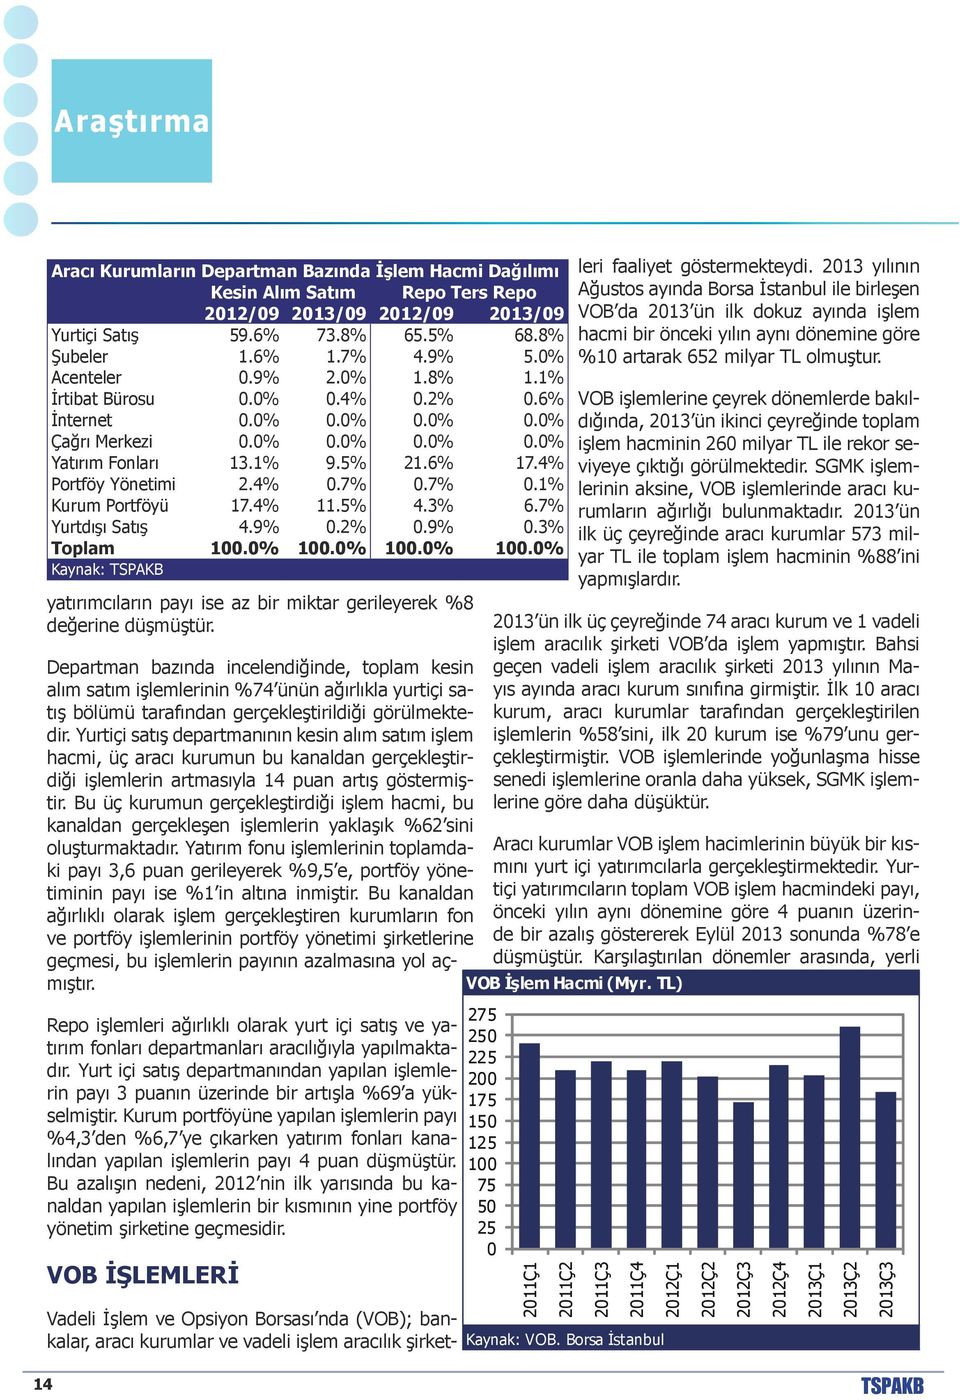 7% 0.1% Kurum Portföyü 17.4% 11.5% 4.3% 6.7% Yurtdışı Satış 4.9% 0.2% 0.9% 0.3% Toplam 100.0% 100.0% 100.0% 100.0% yatırımcıların payı ise az bir miktar gerileyerek %8 değerine düşmüştür.